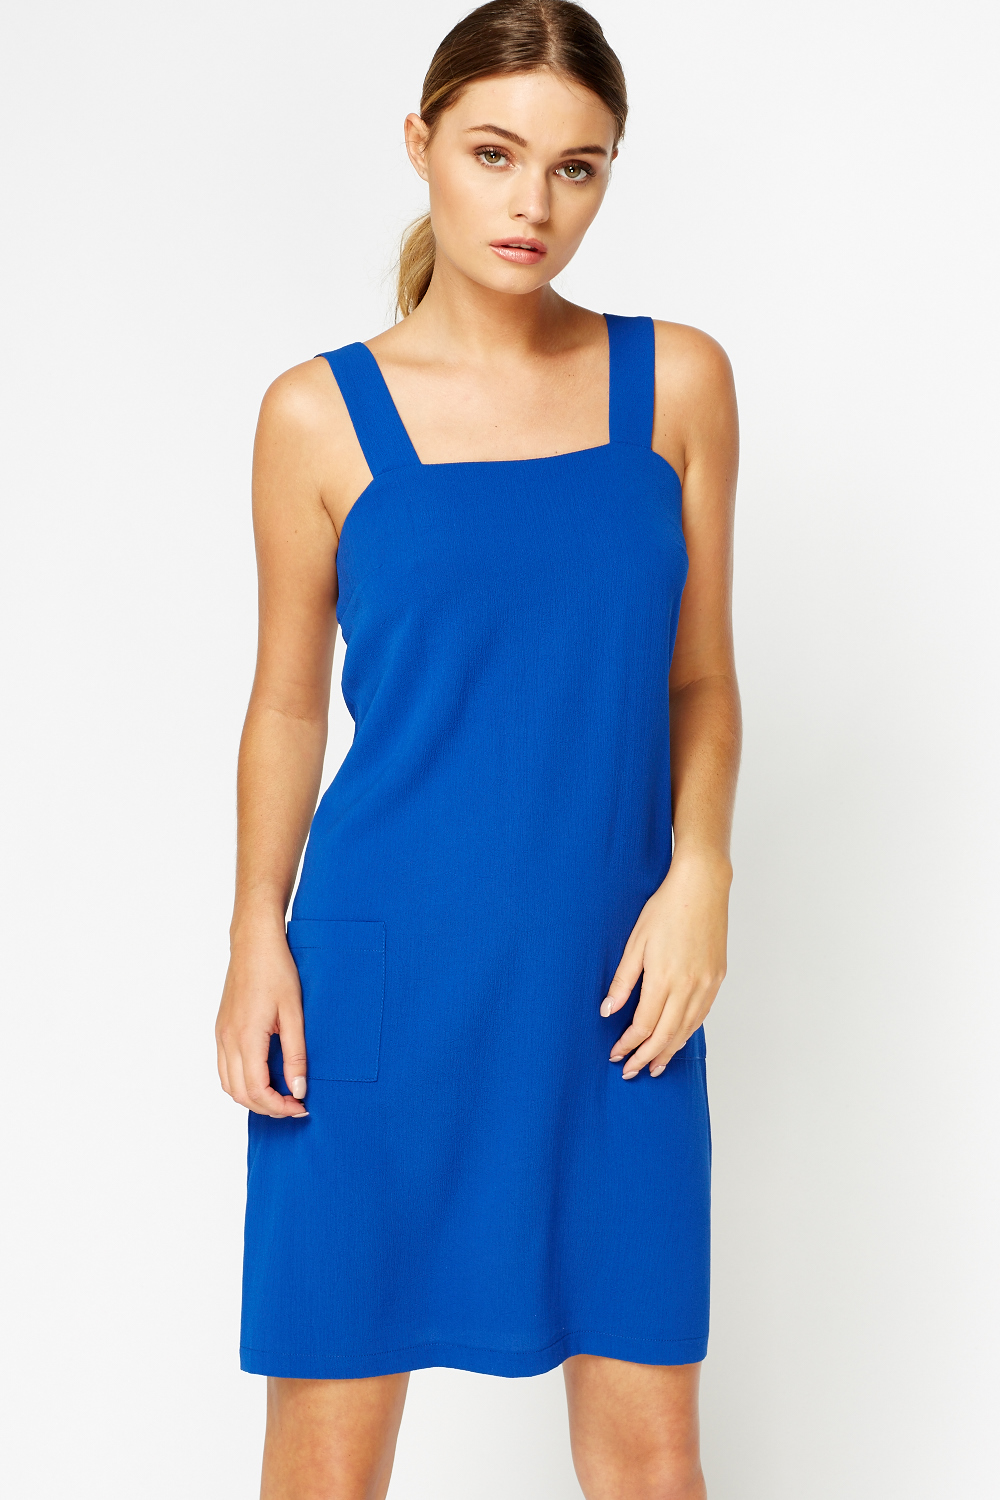 Royal Blue Pinafore Dress - Just $6